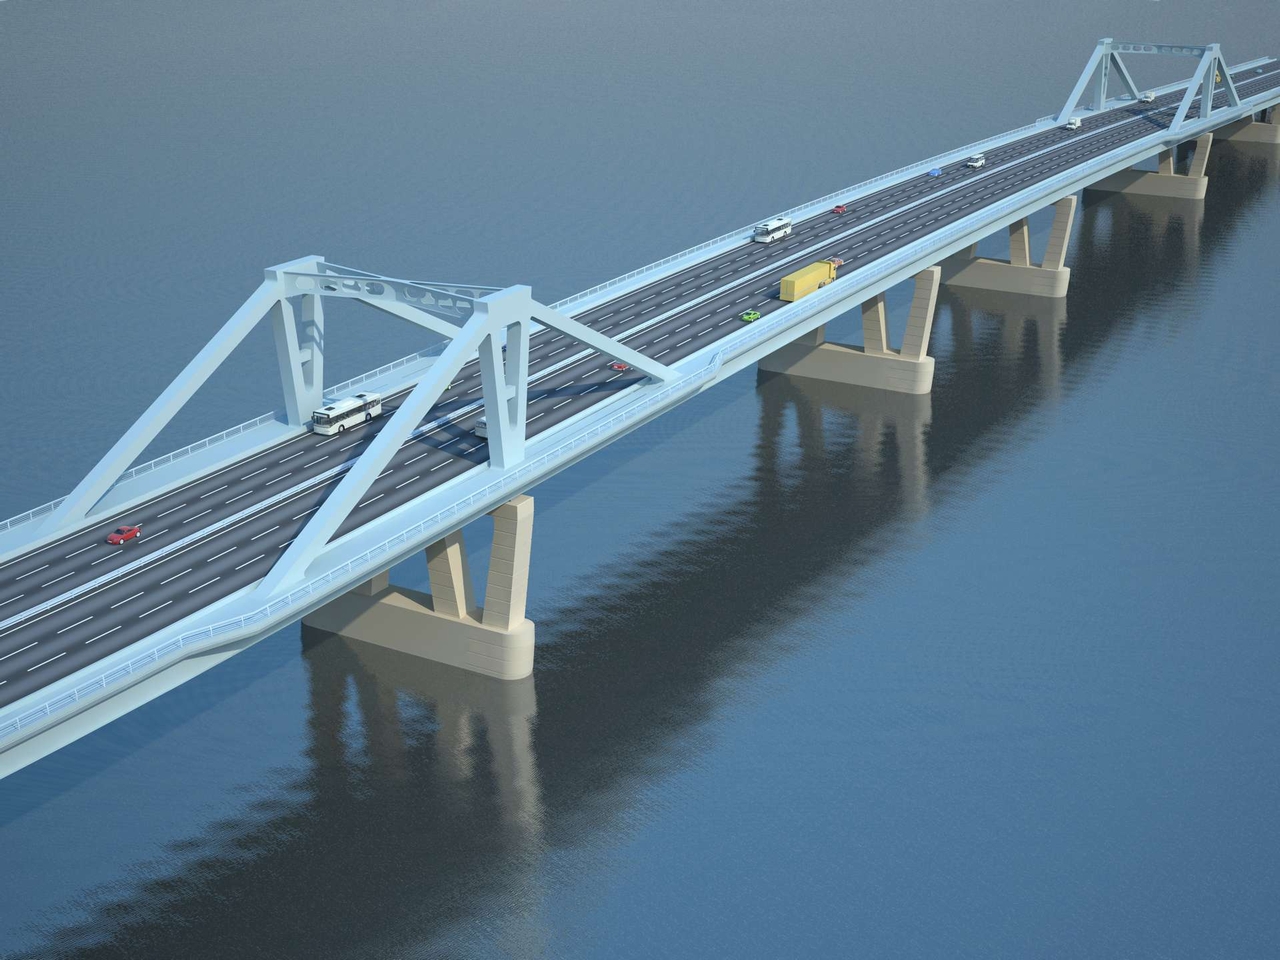 Фрунзенский мост в Самаре